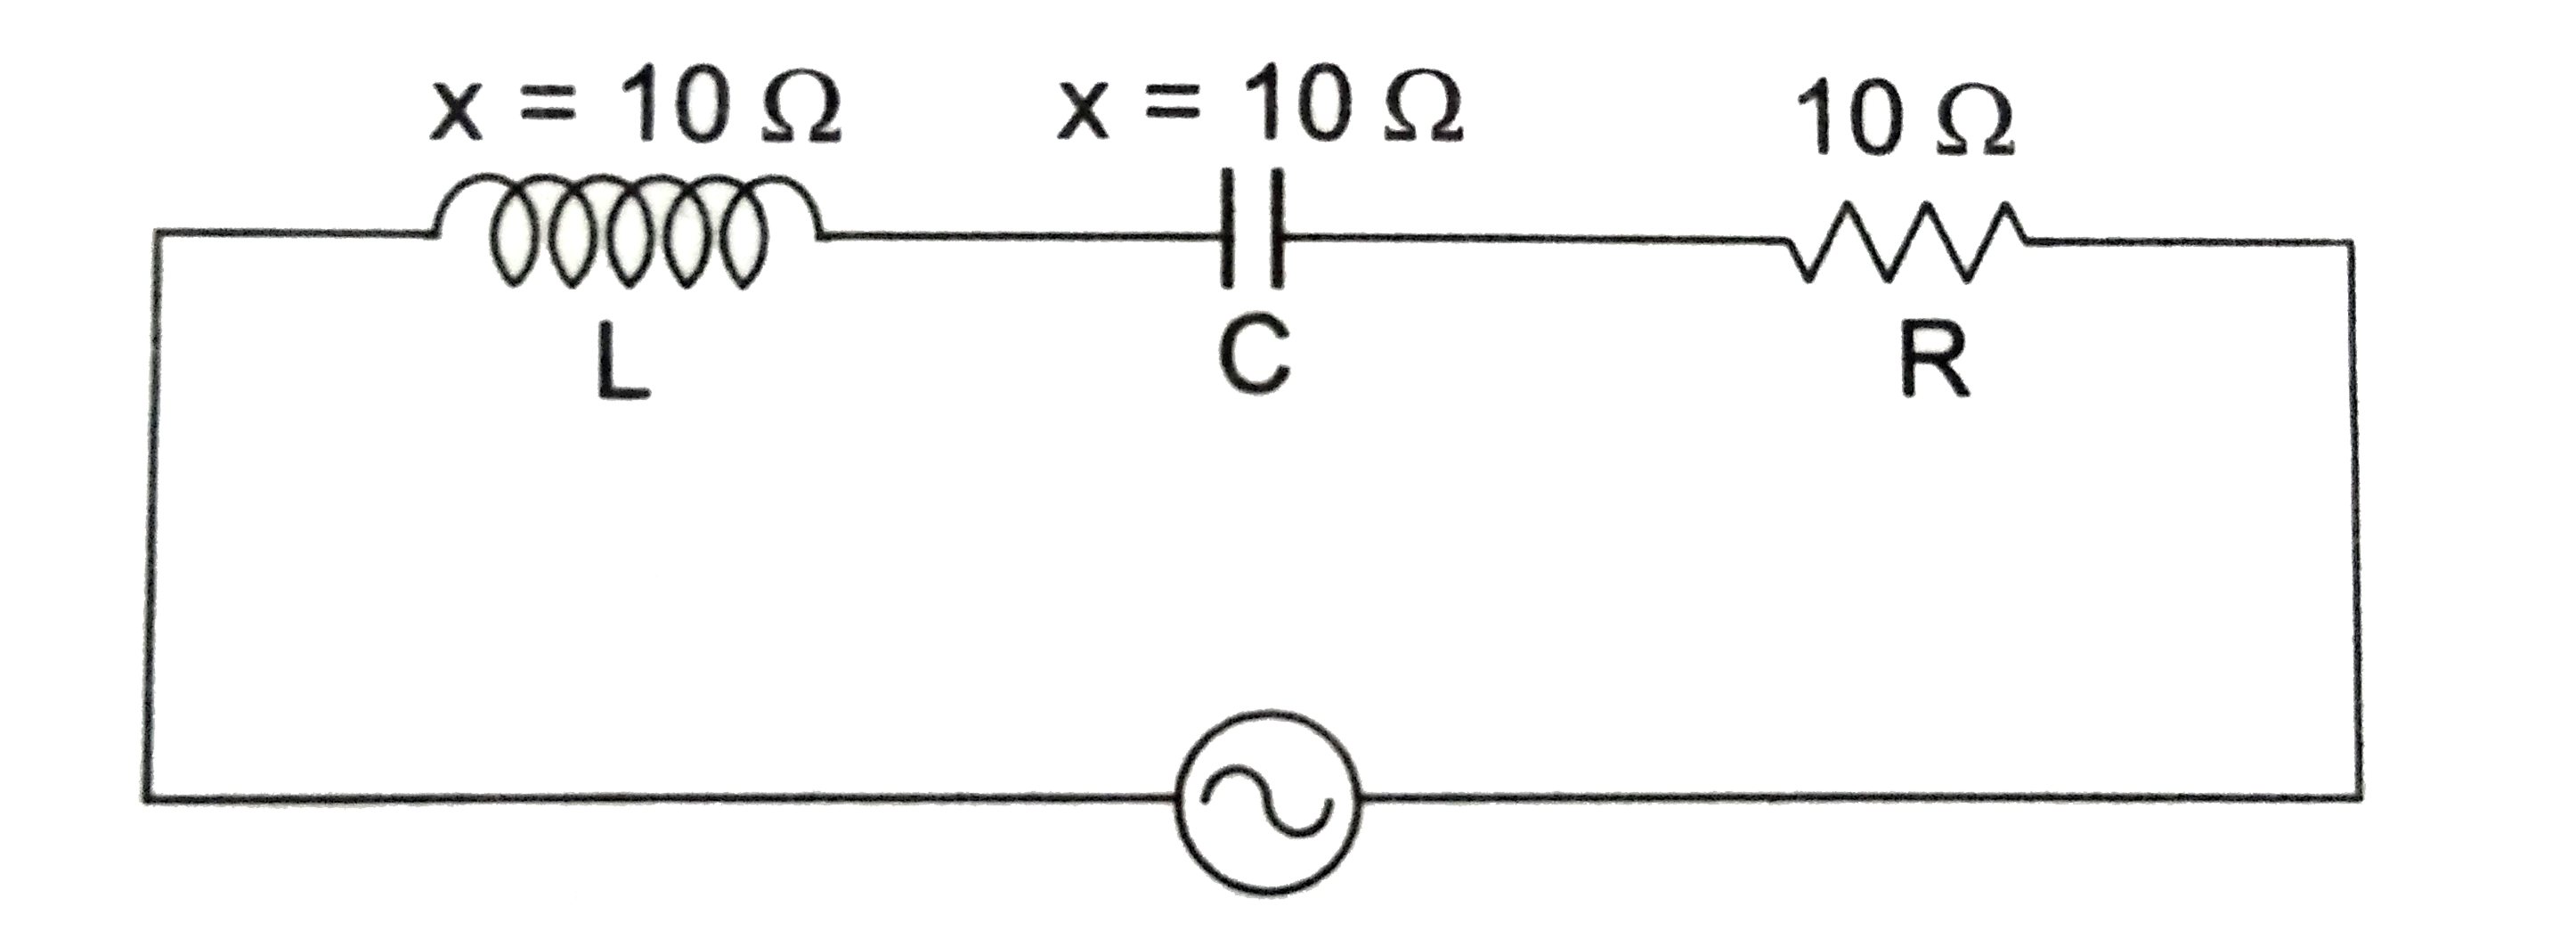 प्रत्यावर्ती धारा परिपथ (a.c. circuit )  में शक्ति - गुणांक ( power factor ) एक महत्त्वपूर्ण पैरामीटर (parameter) है जिसके व्दारा परिपथ के प्रतिरोधी (resistive ) होने की कोटि (degree) का ज्ञान होता हैं । यह परिपथ के प्रतिरोध R तथा प्रतिबाधा ( impedance)  Z के अनुपात से परिभाषित होता हैं । यह मूलतः परिपथ की वोल्टता ( voltage) एंव धारा के बीच (phase differennce )  की कोज्या (cosine )  के तुल्य हैं ।    घूर्णी - सदिश ( rotating vector) व्दारा व्यक्त फेजर आरेख के लिए शक्ति - गुणांक का मान हैं